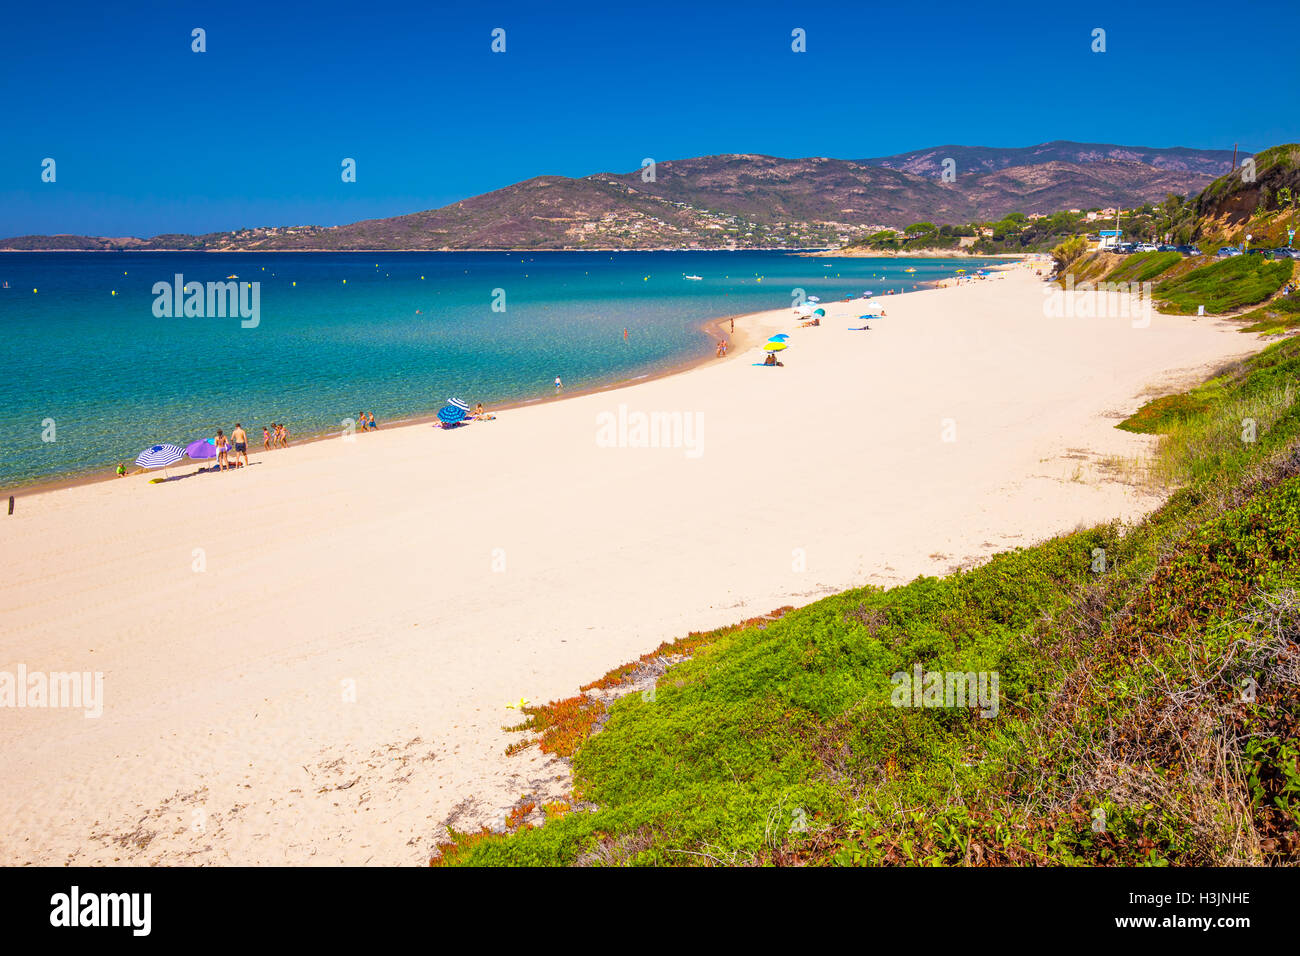 Belle plage de sable avec rochers et tourquise l'eau claire dans le Golfe de Sagone, Corse, France, Europe. Banque D'Images